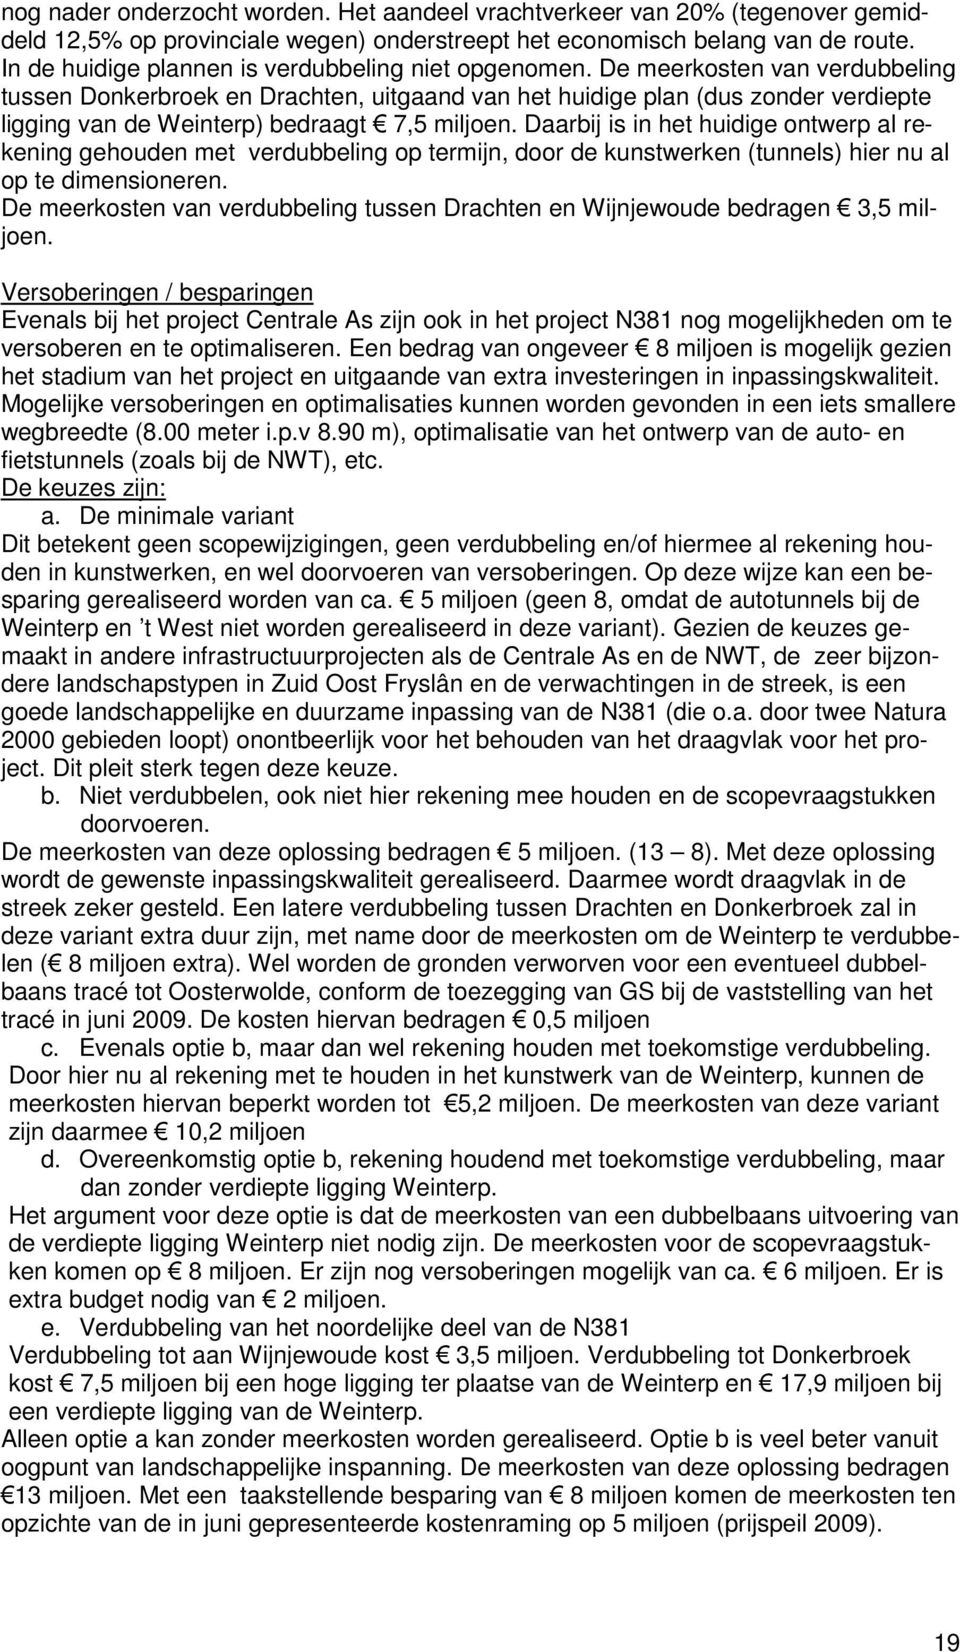 De meerkosten van verdubbeling tussen Donkerbroek en Drachten, uitgaand van het huidige plan (dus zonder verdiepte ligging van de Weinterp) bedraagt 7,5 miljoen.